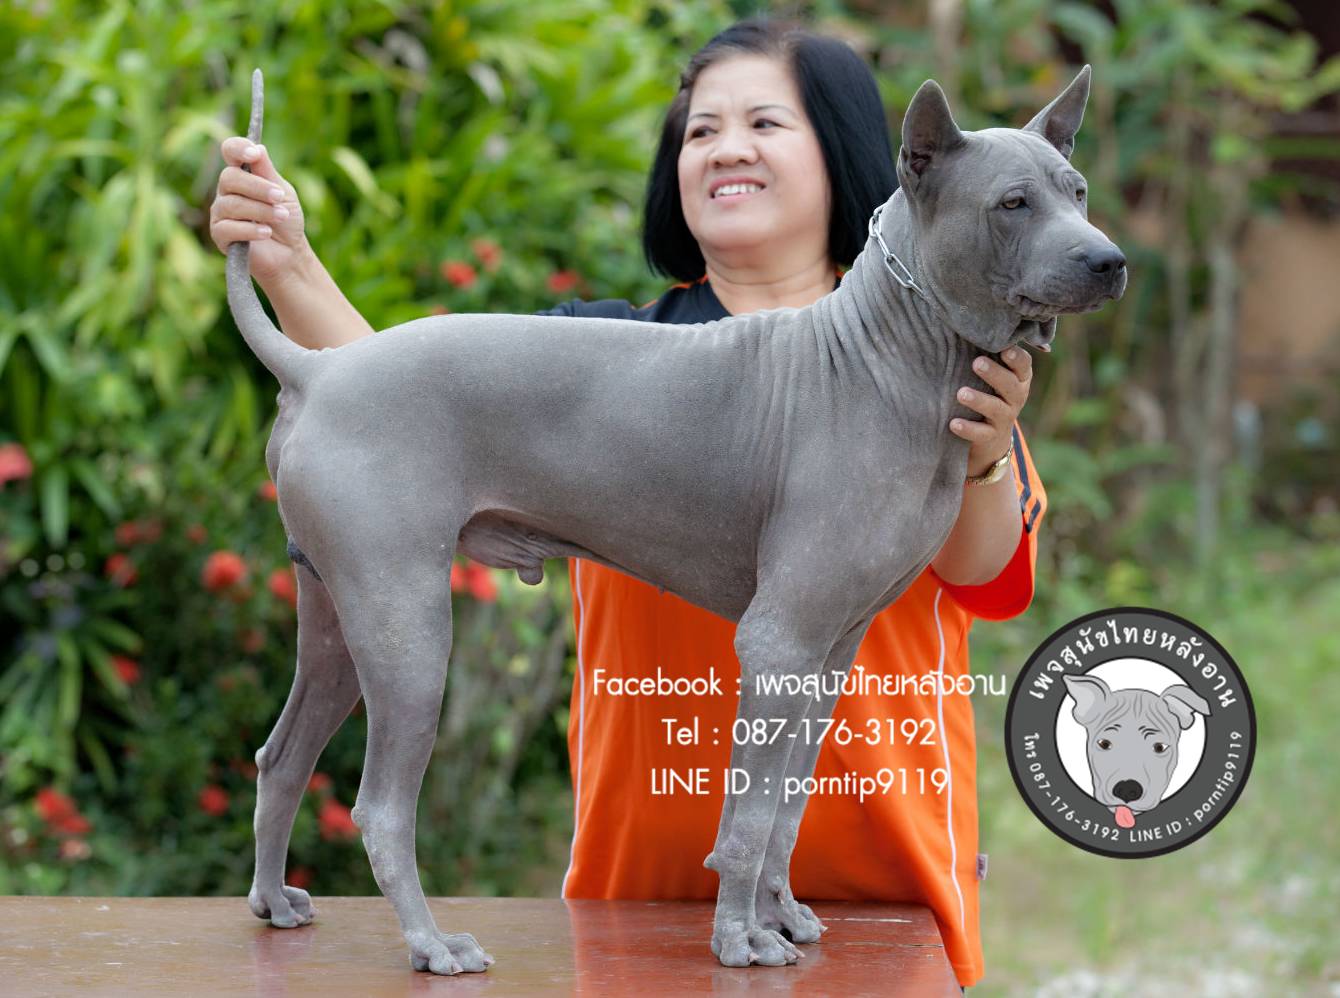 โทร 0871763192,สุนัขไทยหลังอานสายตราด,สุนัขจตุจักร,กรุงเทพฟาร์มสุนัข,ขายสุนัขกรุงเทพ,สุนัขไทยหลังอานกรุงเทพ, เชียงใหม่สุนัขไทย,สุนัขไทยหลังอานภูเก็ต,สุนัขไทยหลังอานเชียงใหม่,TRD,thairidgeback, blue thairidgeback , red thairidgeback , ISABELLA , FEMALE , MALE, Thai ridgeback dog, Ridgeback dog, Primitive, pet, puppy, Thai Dog, Mahthai, Lang ahn,พรทิพย์เชียงรายฟาร์ม, สายเอกลักษณ์,แนะนำสุนัขไทยหลังอาน,ไทยหลังอาน ,ใบเพ็ดดีกรี,ส่งสุนัข,ซื้อหมา,ขายหมา,หมาไทย,หมาไทยหลังอาน,หมาไทยตราด,หมาหลังอานสวย,นิสัยหมาหลังอาน ,วัคซีนสุนัข,แนะนำฟาร์มสุนัข ,ราคาหมาหลังอาน,  ราคาถูก, สุนัขไทยหลังอาน  ,   ขายสุนัขไทยหลังอาน  ,  ลูกสุนัขไทยหลังอาน ,  จำหน่ายสุนัขไทยหลังอาน ,  ไทยหลังอานราคา   , ไทยหลังอานนิสัย  ,    หมาไทยหลังอานแท้  ,   หมาหลังอานแท้  ,    หลังอานป้าสมคิด, ป้าสมคิดวัชรัมพร  ,  คอกสุนัขไทยหลังอาน   ,  ฟาร์มสุนัขไทยหลังอาน ,  หลังอานพรทิพย์ ,พรทิพย์ไทยหลังอาน,  สุนัขไทยหลังอานเชียงราย,เชียงรายไทยหลังอาน,ภาคเหนือไทยหลังอาน,ไทยหลังอานภาคเหนือ,แม่สายไทยหลังอาน  ,หลังอานแม่สาย,  สุนัขไทยหลังอานสีสวาด,สุนัขไทยหลังอานสีแดงเม็ดมะขาม,สีแดงเม็ดมะขาม,สีกลีบบัว,ขนสั้น,ขนกำมะหยี่,อานโบว์ลิ่ง,อานใบโพธิ์,อานเทพพนม,อานเข็ม,อานพิณ,มุมขาสุนัข,เส้นหลัง,ลิ้นดำ,เล็บดำ,ตาดำ,ฟันสุนัข,ขวัญที่อาน,สุนัขเฝ้าบ้าน,สุนัขขนาดกลาง,ฝึกสุนัข,ไทยหลังอานสายตราด,ไทยหลังอานจันทบุรี,ไทยหลังอานไทยแชมป์,ประกวดสุนัขไทยหลังอาน,หาซื้อสุนัขไทยหลังอาน,เชียงใหม่ขายสุนัขไทยหลังอาน,อำเภอเมืองเชียงรายขายสุนัข,สุนัขไทยหลังอานสายเลือดแชมป์,ไทยหลังอานพ่อพันธุ์,ไทยหลังอานแม่พันธุ์,เลี้ยงเล่น,เฝ้าสวน,สุนัขฉลาด,